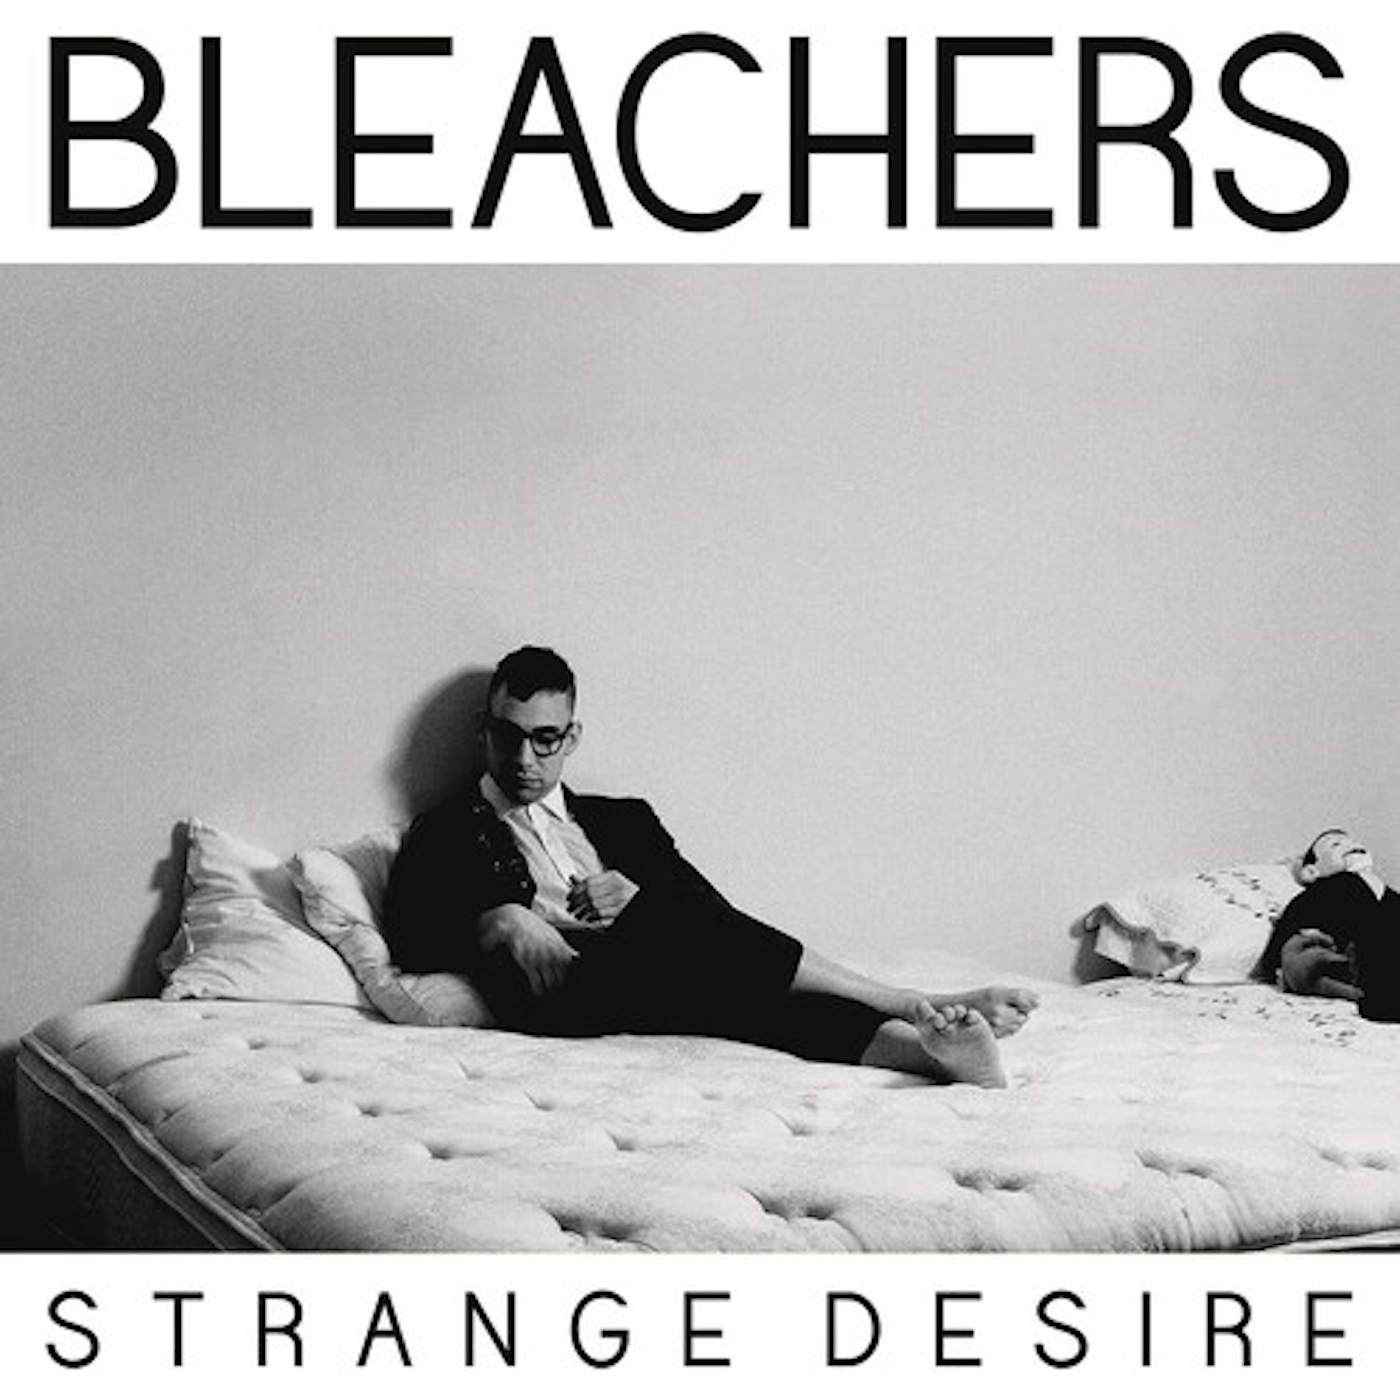 Bleachers Strange Desire Vinyl Record